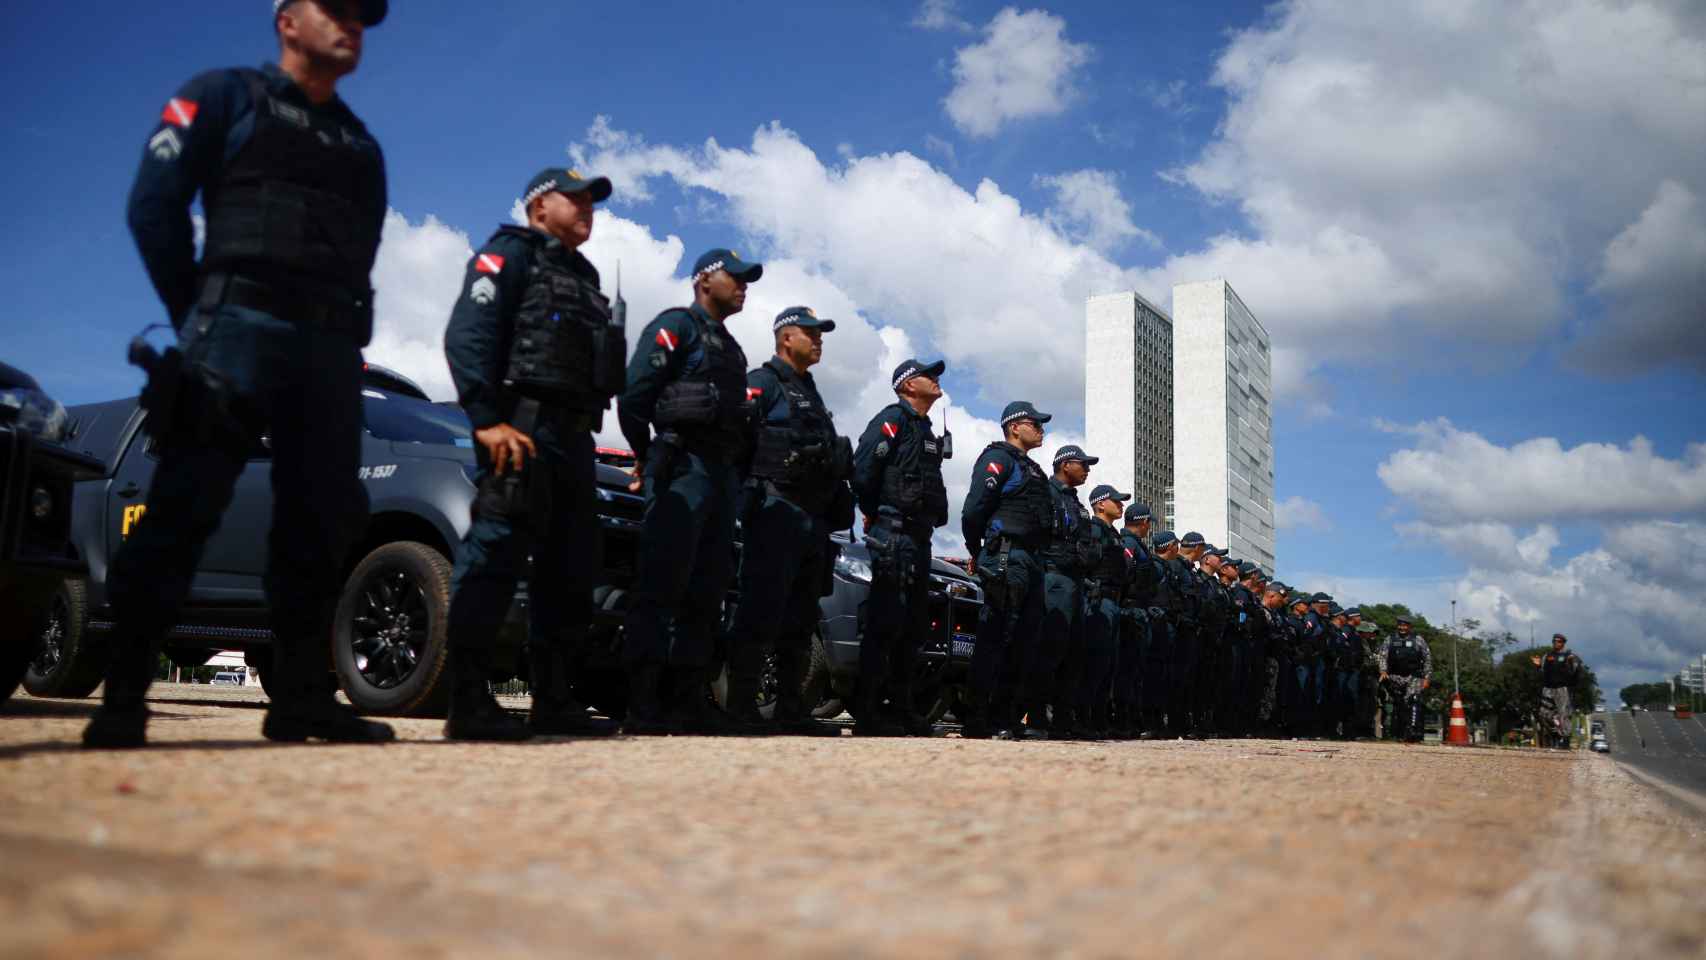 Fuerzas de seguridad brasileñas protegen el Palacio del Planalto el pasado día 8 de enero.